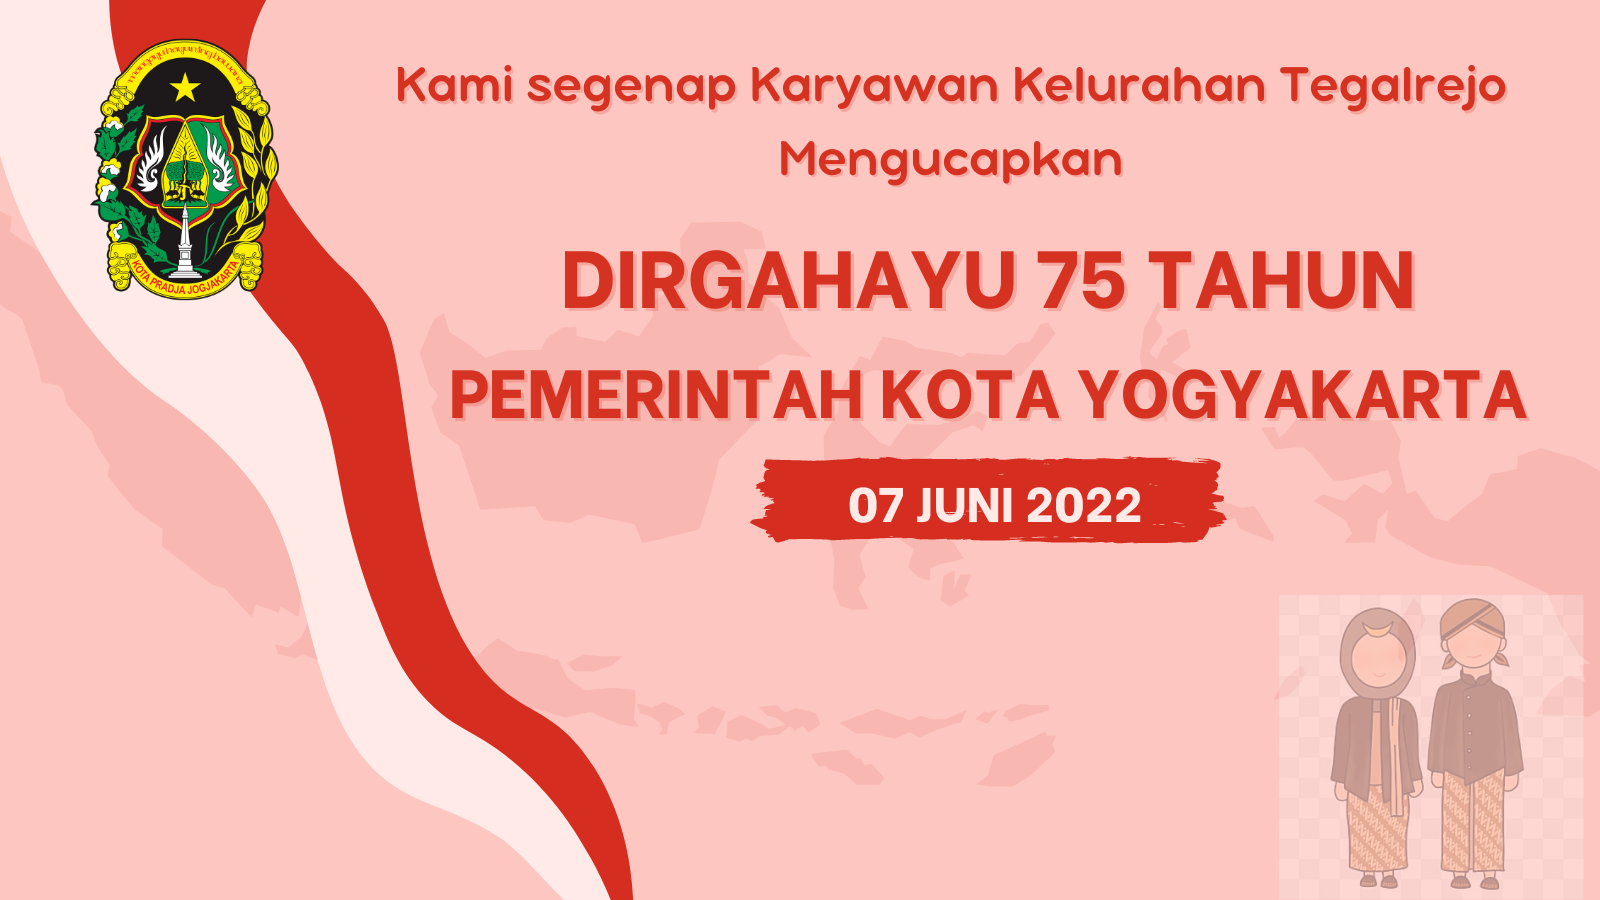 DIRGAHAYU KE-75 TAHUN PEMERINTAH KOTA YOGYAKARTA